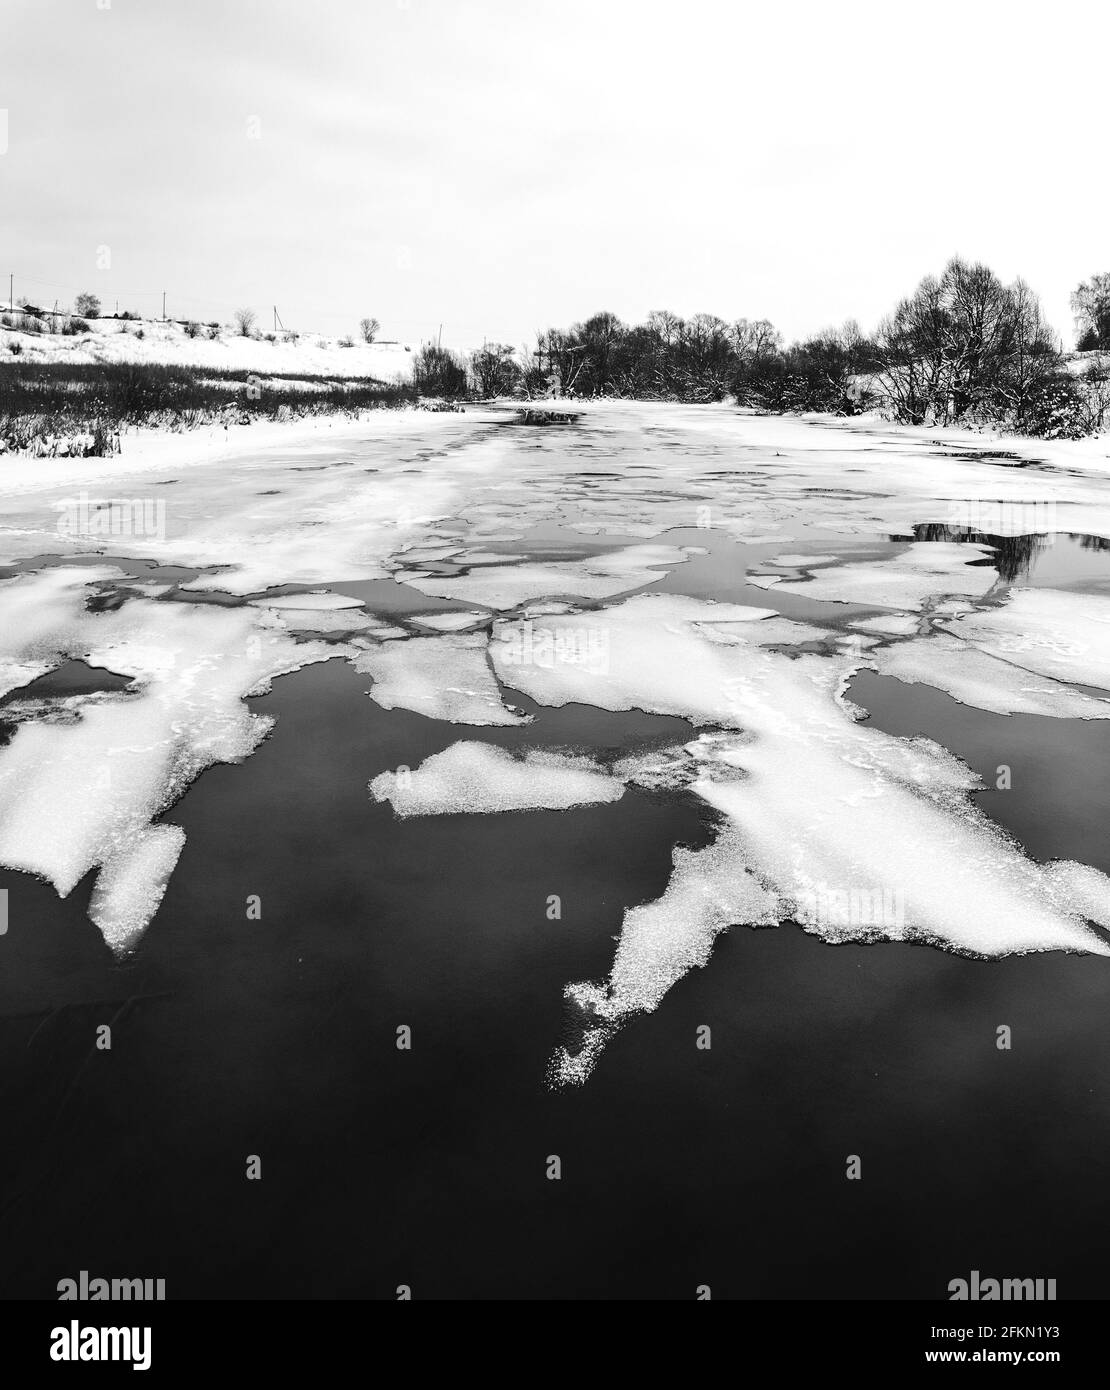 Paysage rural panoramique noir et blanc d'hiver ou de printemps avec flottant sur des morceaux de glace fondue à la surface de l'eau Banque D'Images